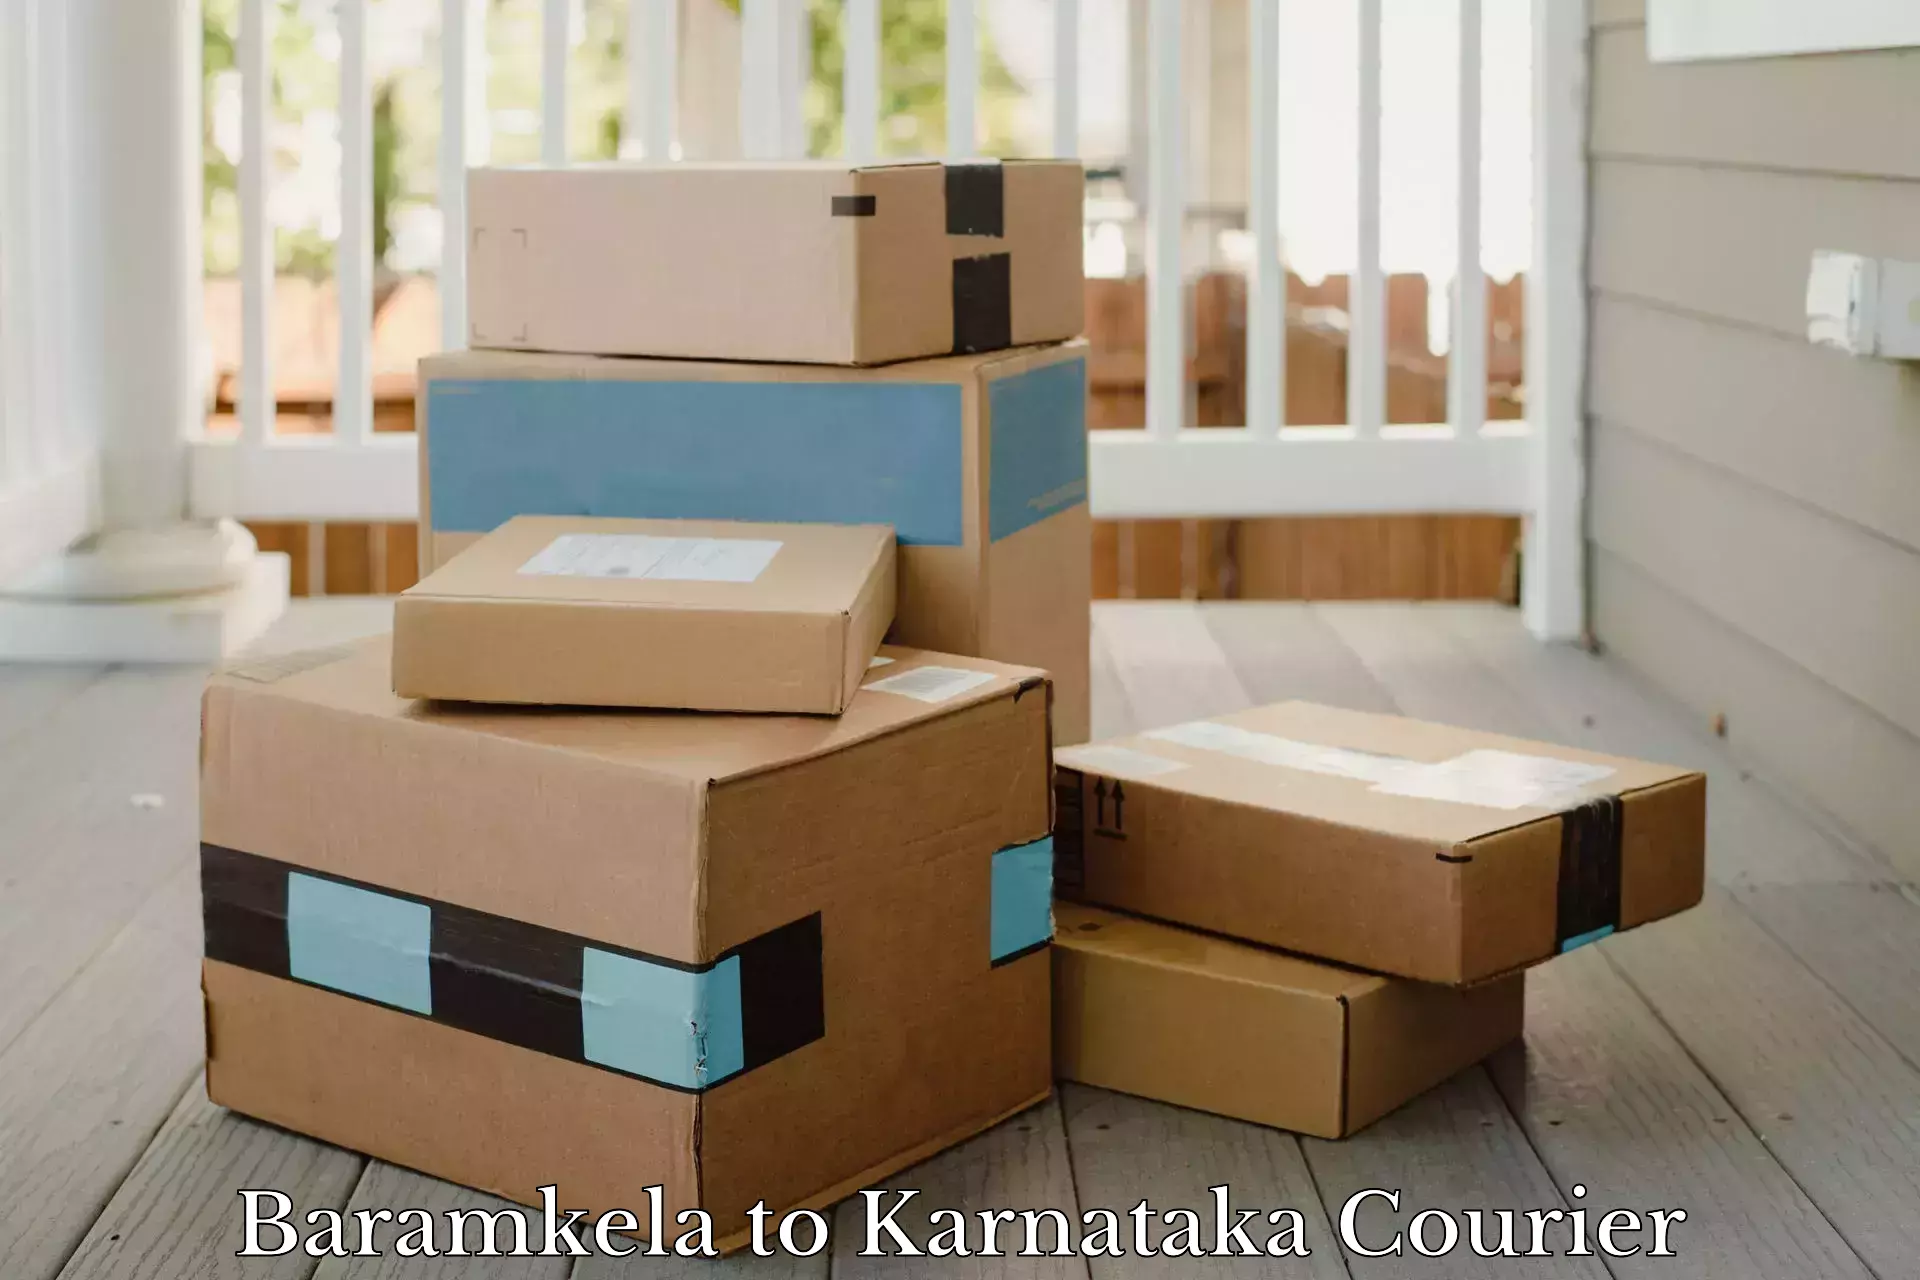 Express logistics providers Baramkela to Ankola